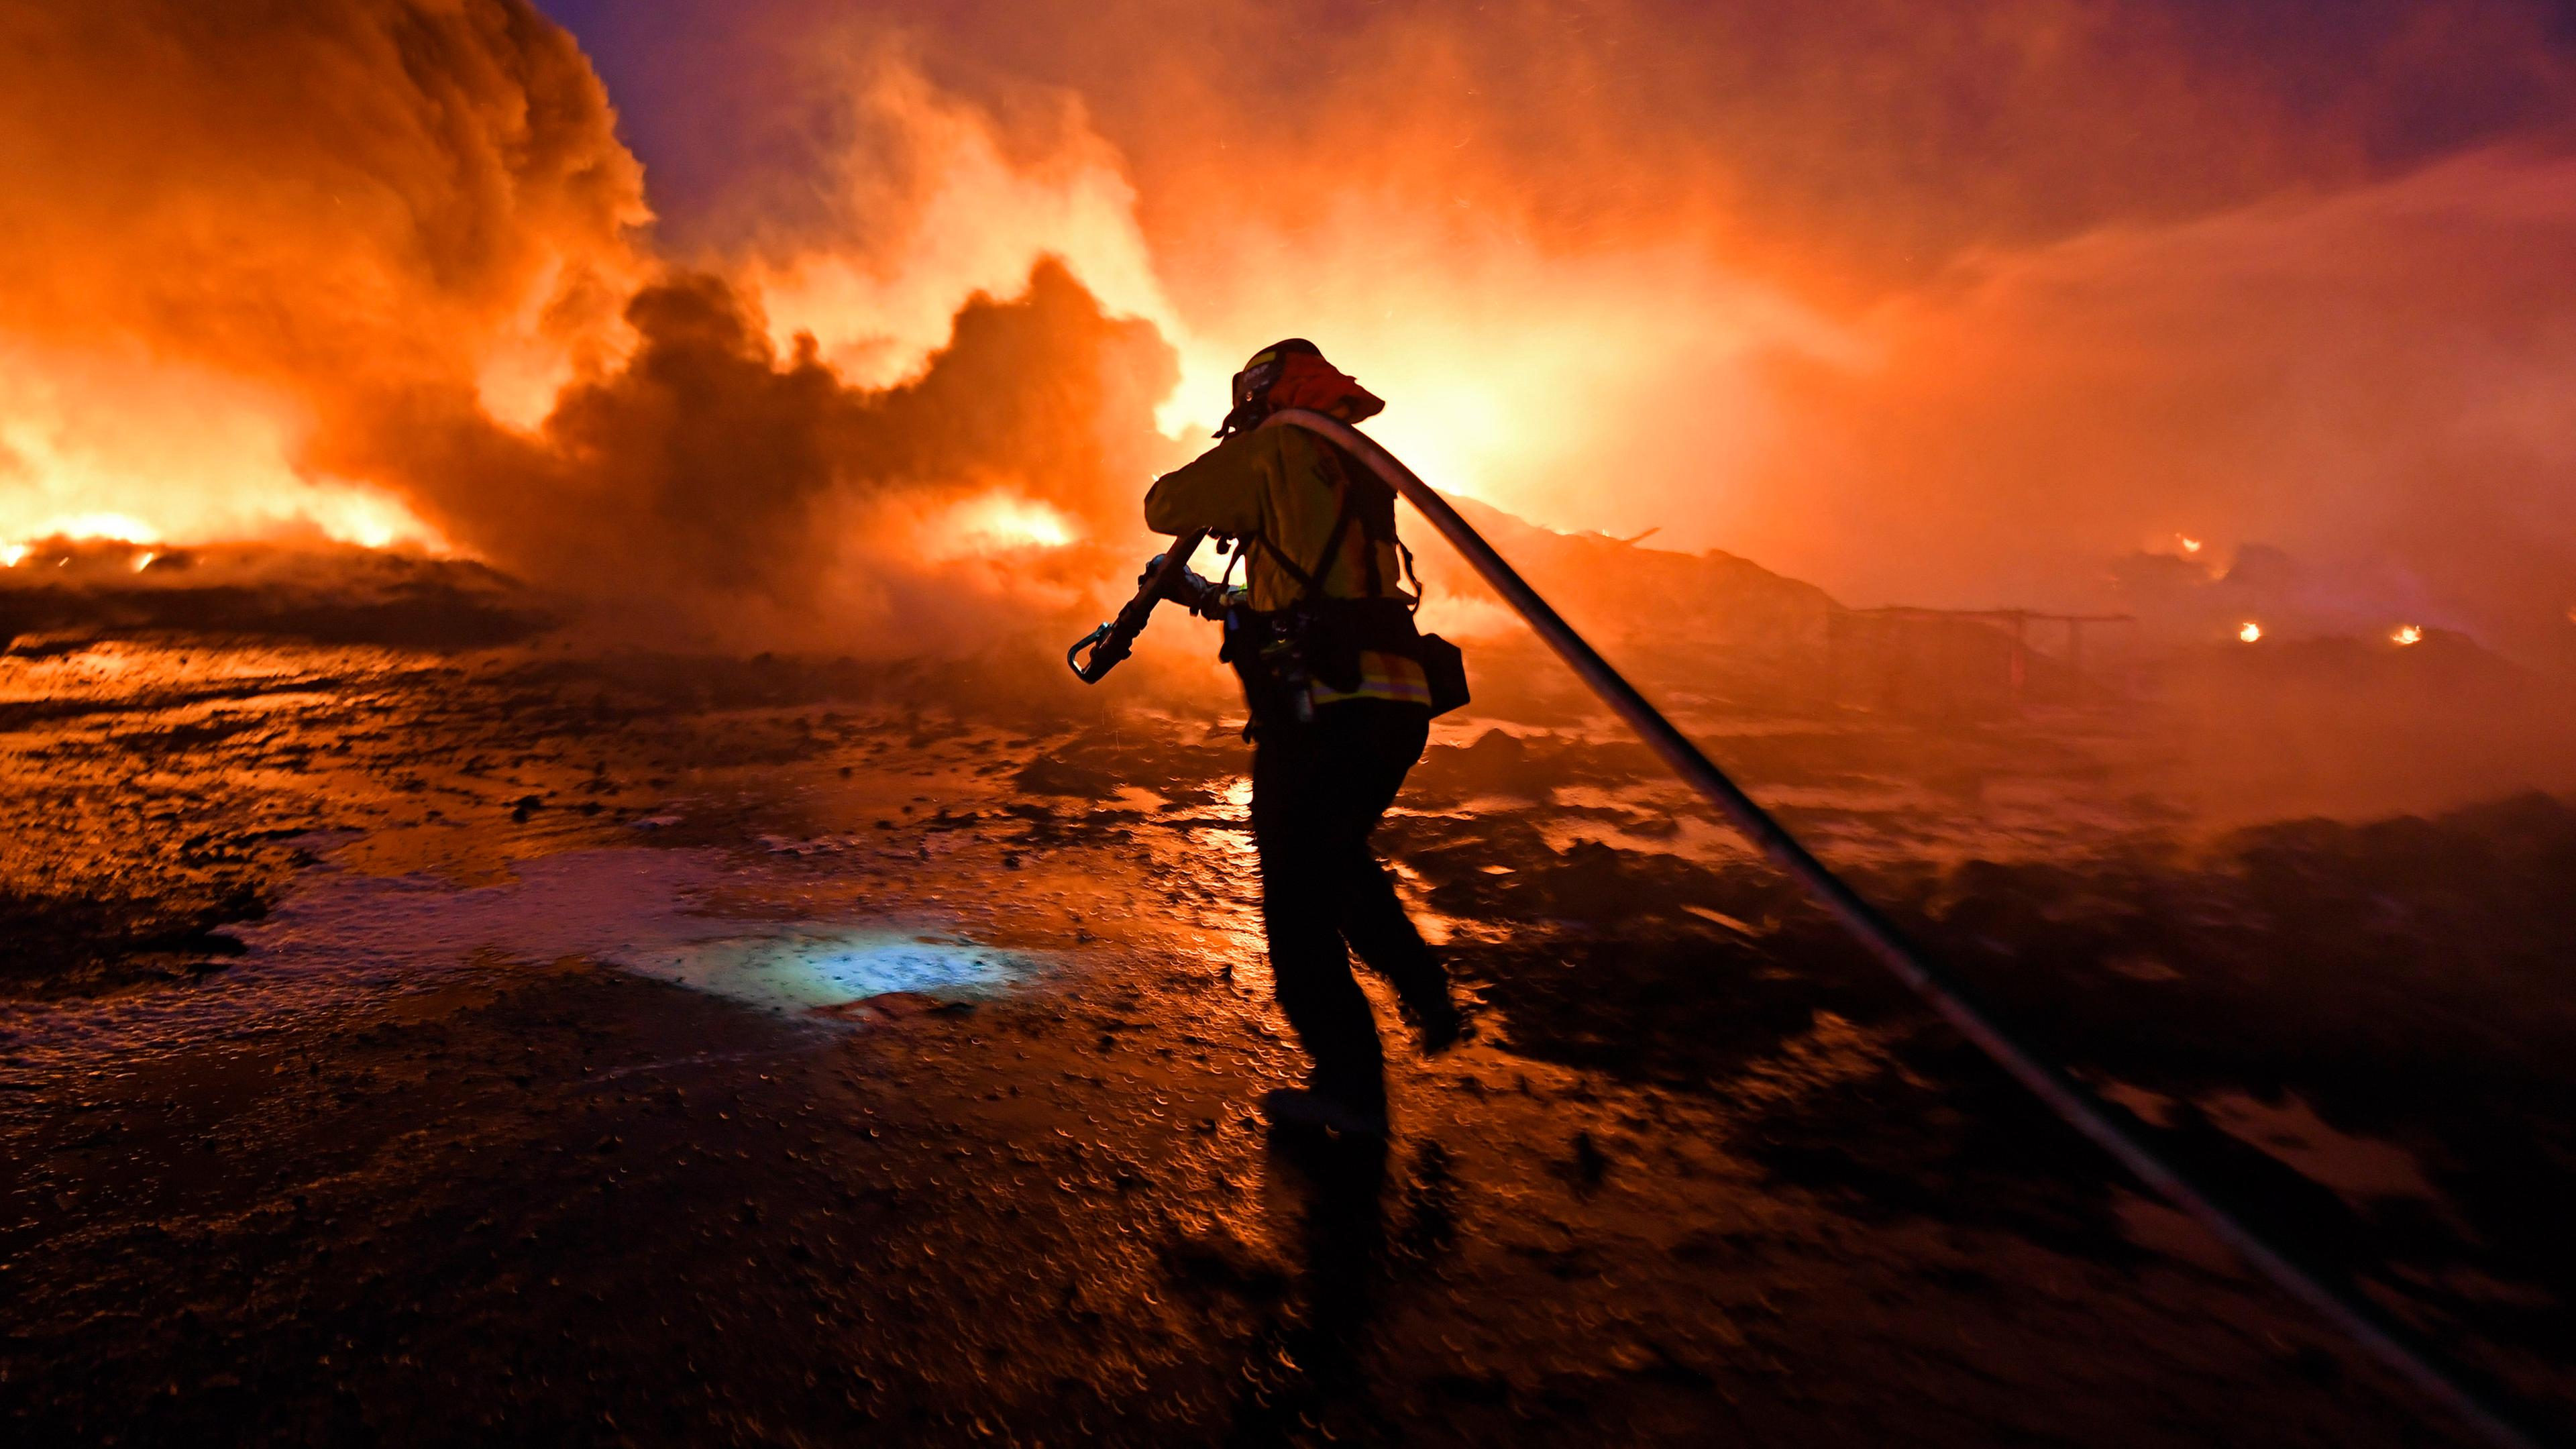 Feuerwehrmann löscht Flammen von Brand in Kalifornien